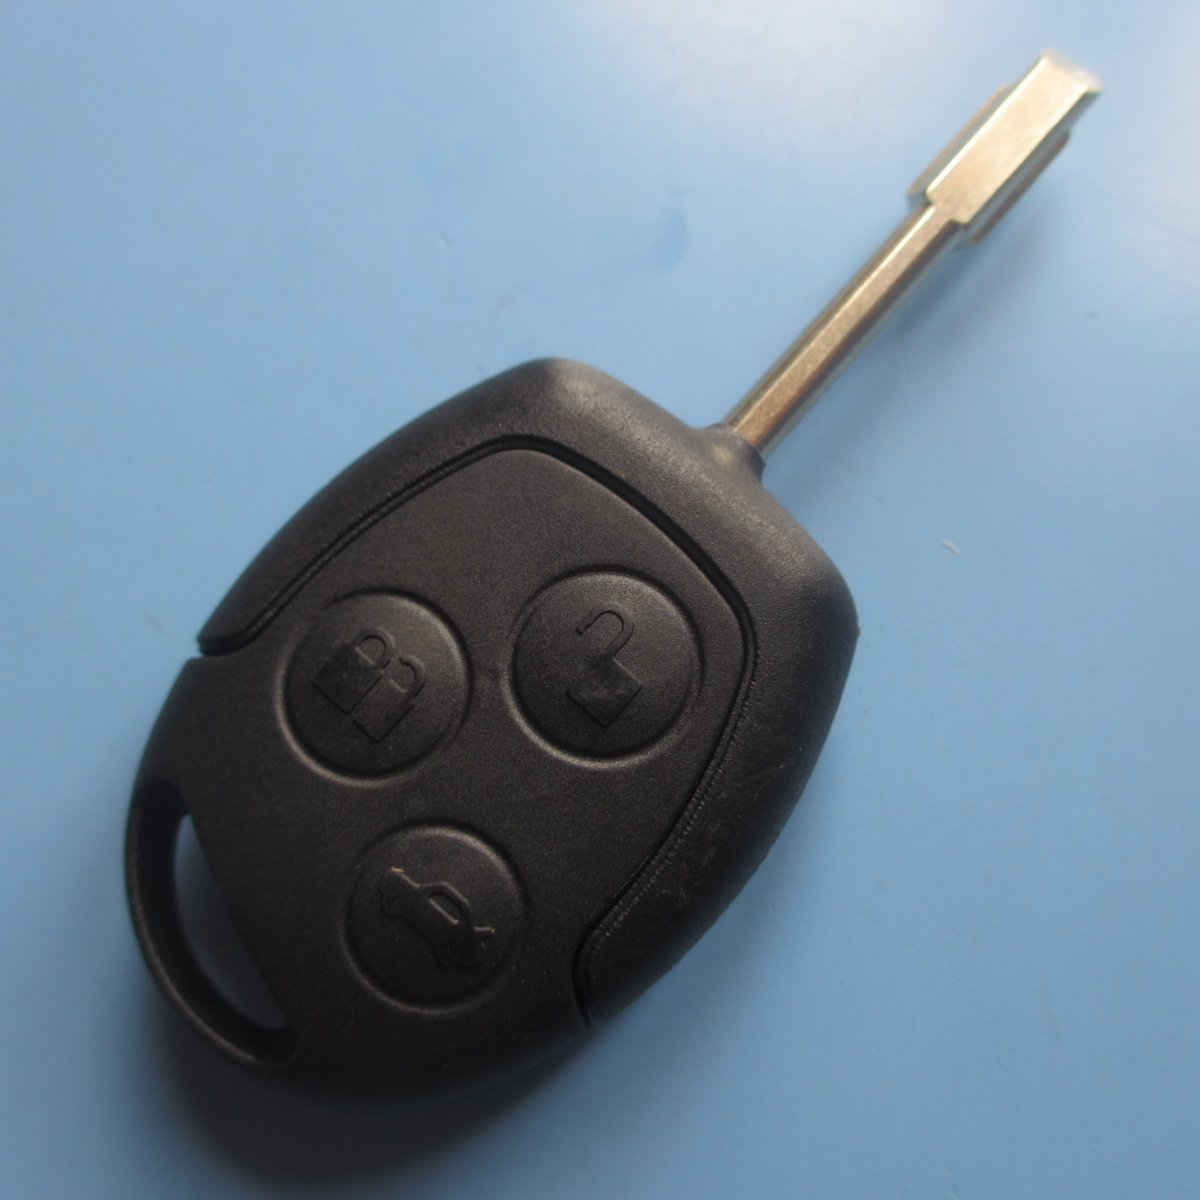 Ersatz Schlüssel Gehäuse, Taste, Auto Schlüssel, Flip, Schlüsselrohling, Fernbedienung, Transmitter Key, Autoschlüsselanhänger, Gehäuse ohne Elektronik, Inion. von INION